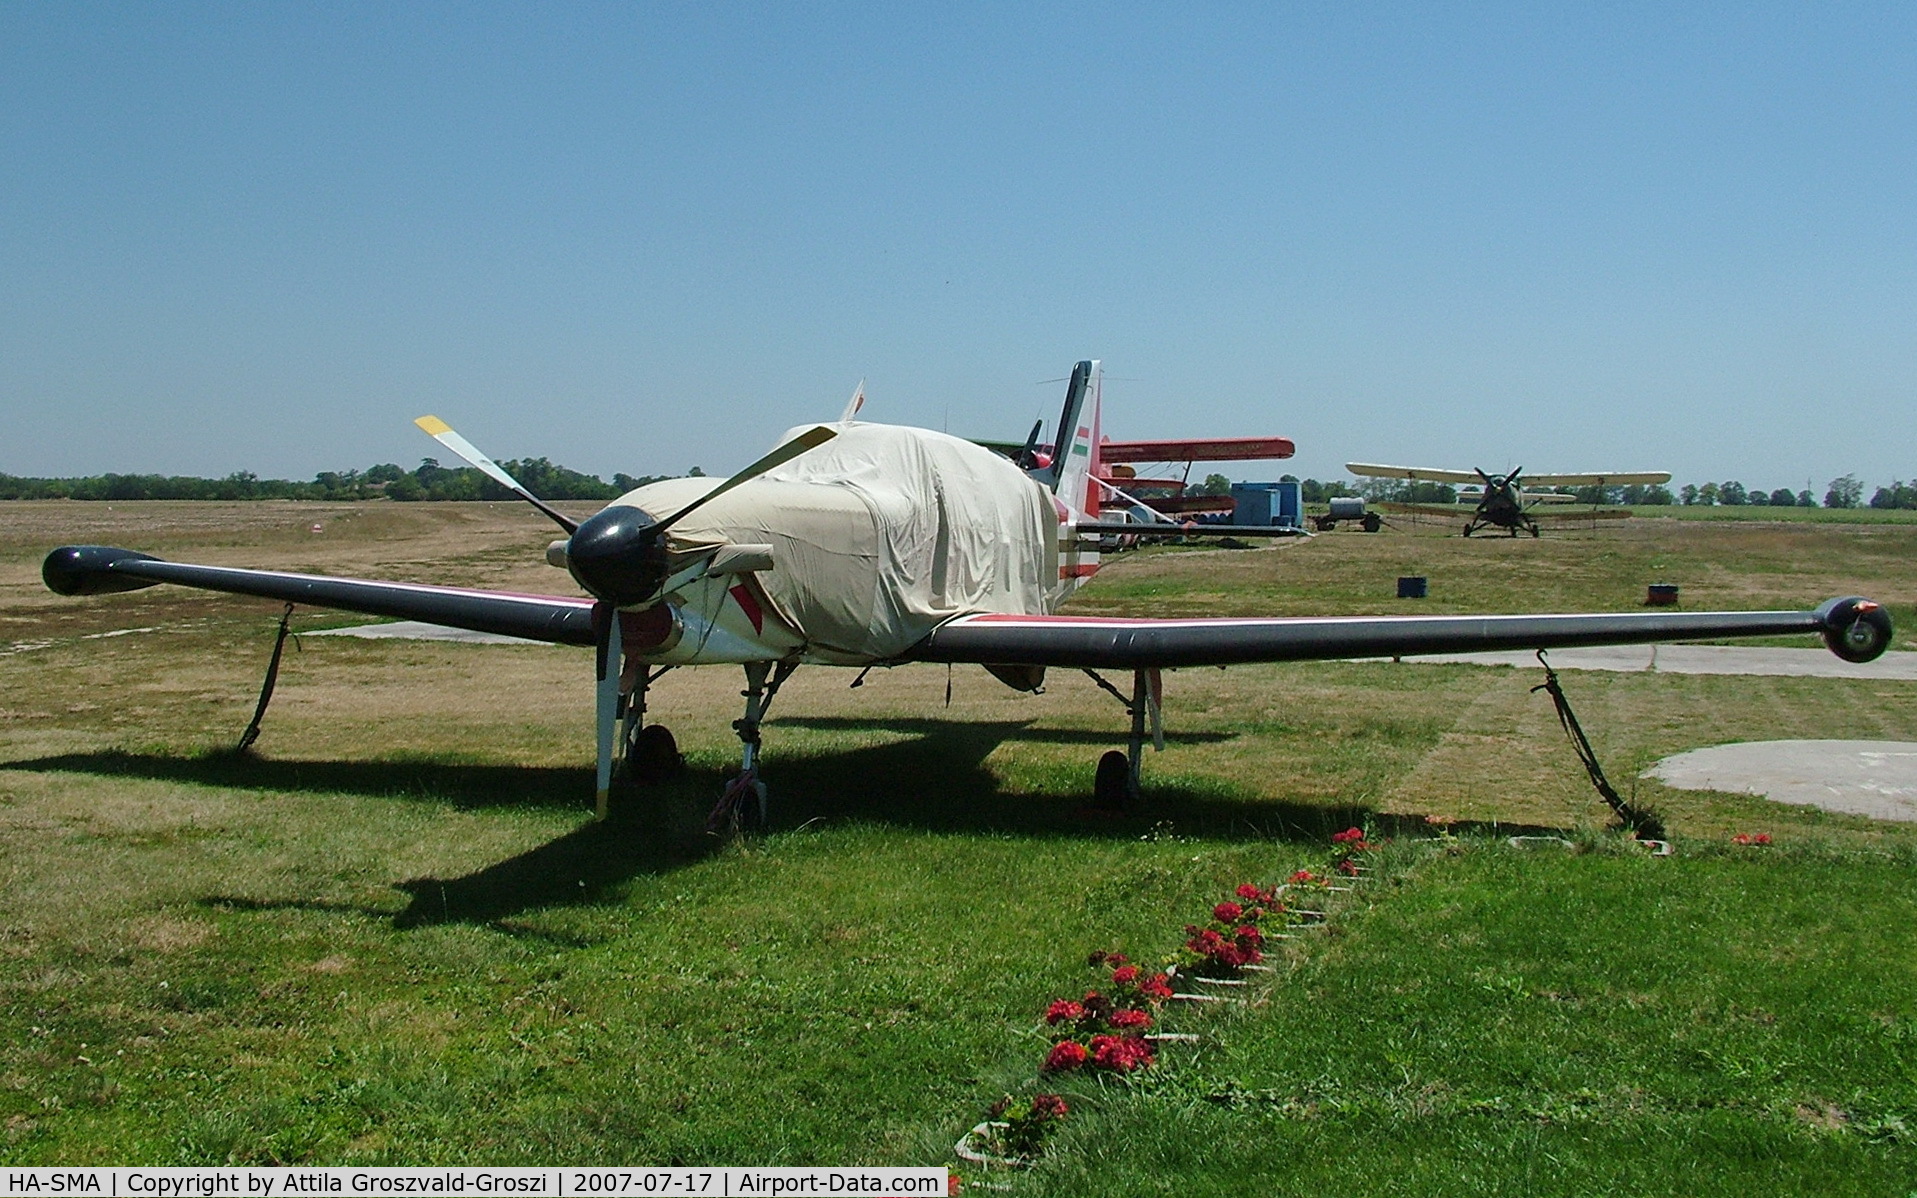 HA-SMA, 2003 Technoavia SM-2000P C/N 00001, Györszentiván-Böny Airfield - Hungary